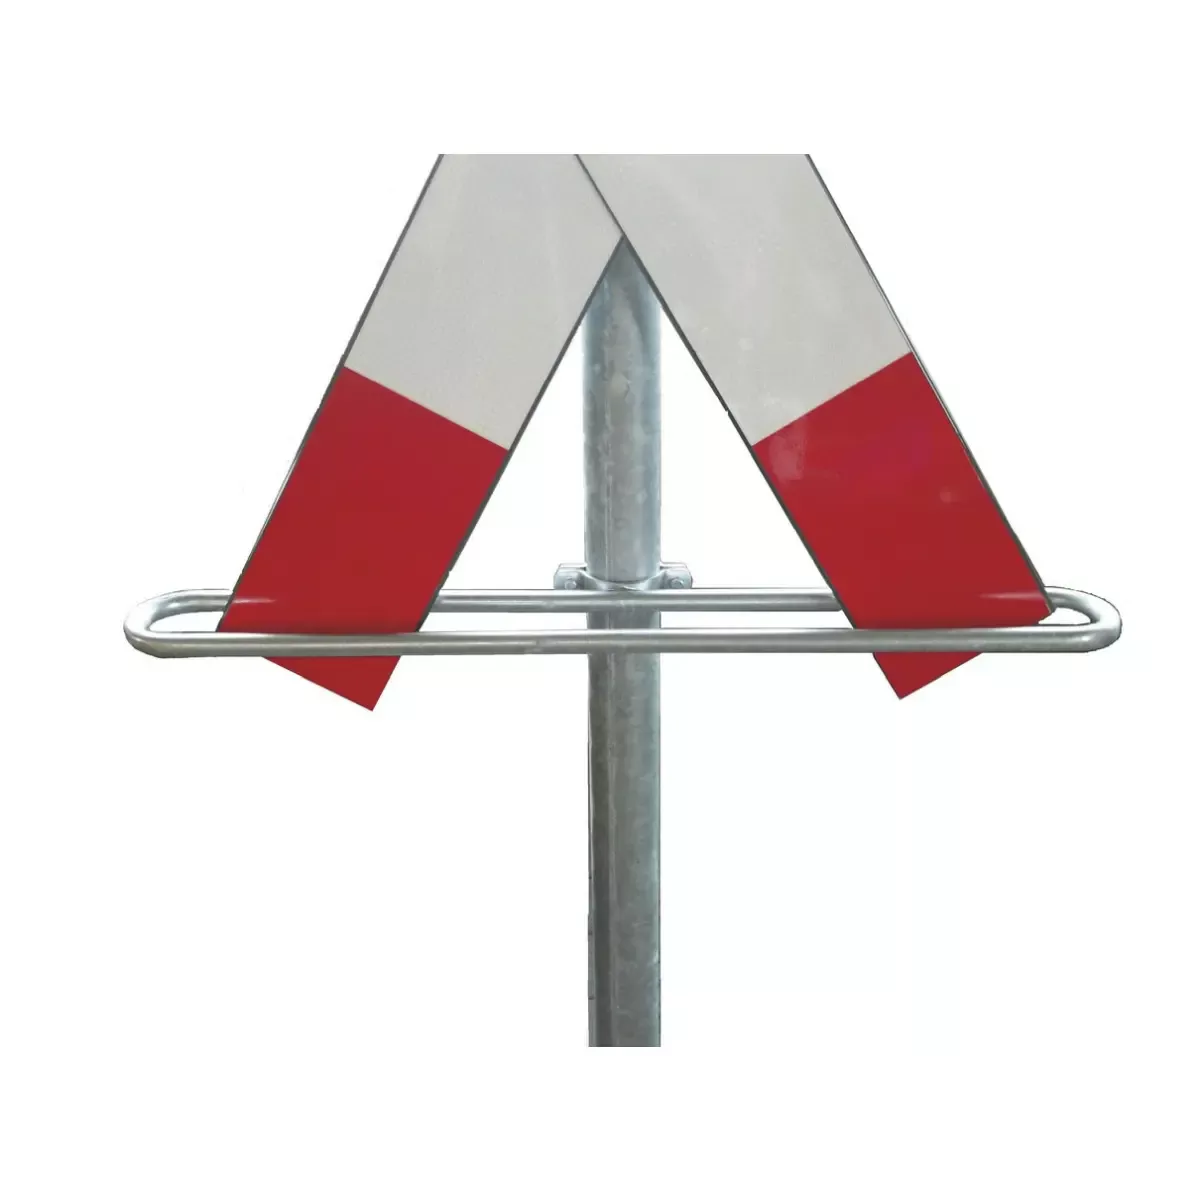 Befestigungsmaterial Andreaskreuzbügel, Stahl verzinkt, rot lackiert, für Pfosten ø 60 mm für Befestigen und Montieren